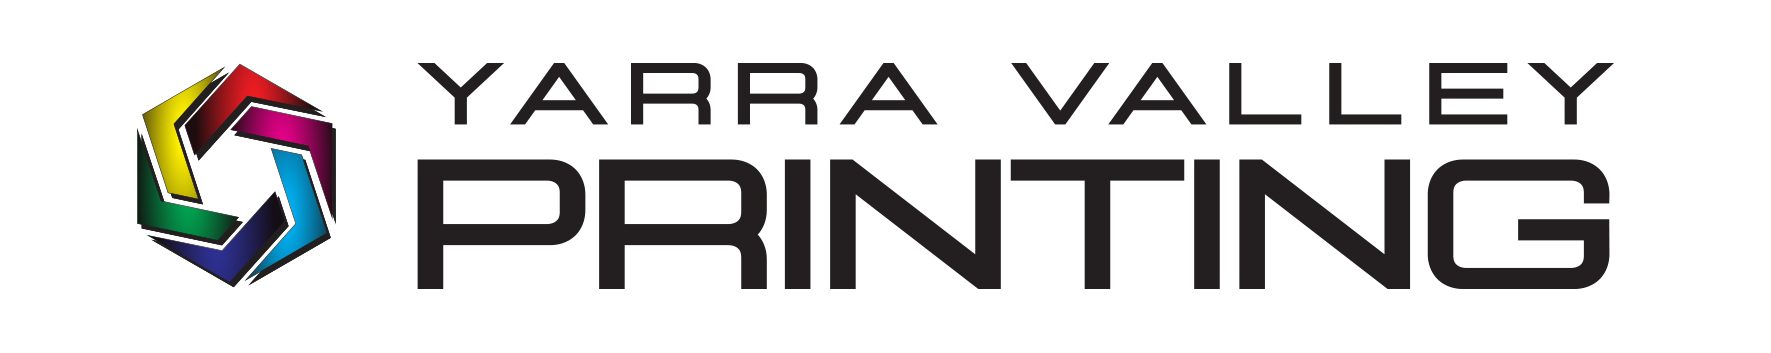 Yarra Valley Printing